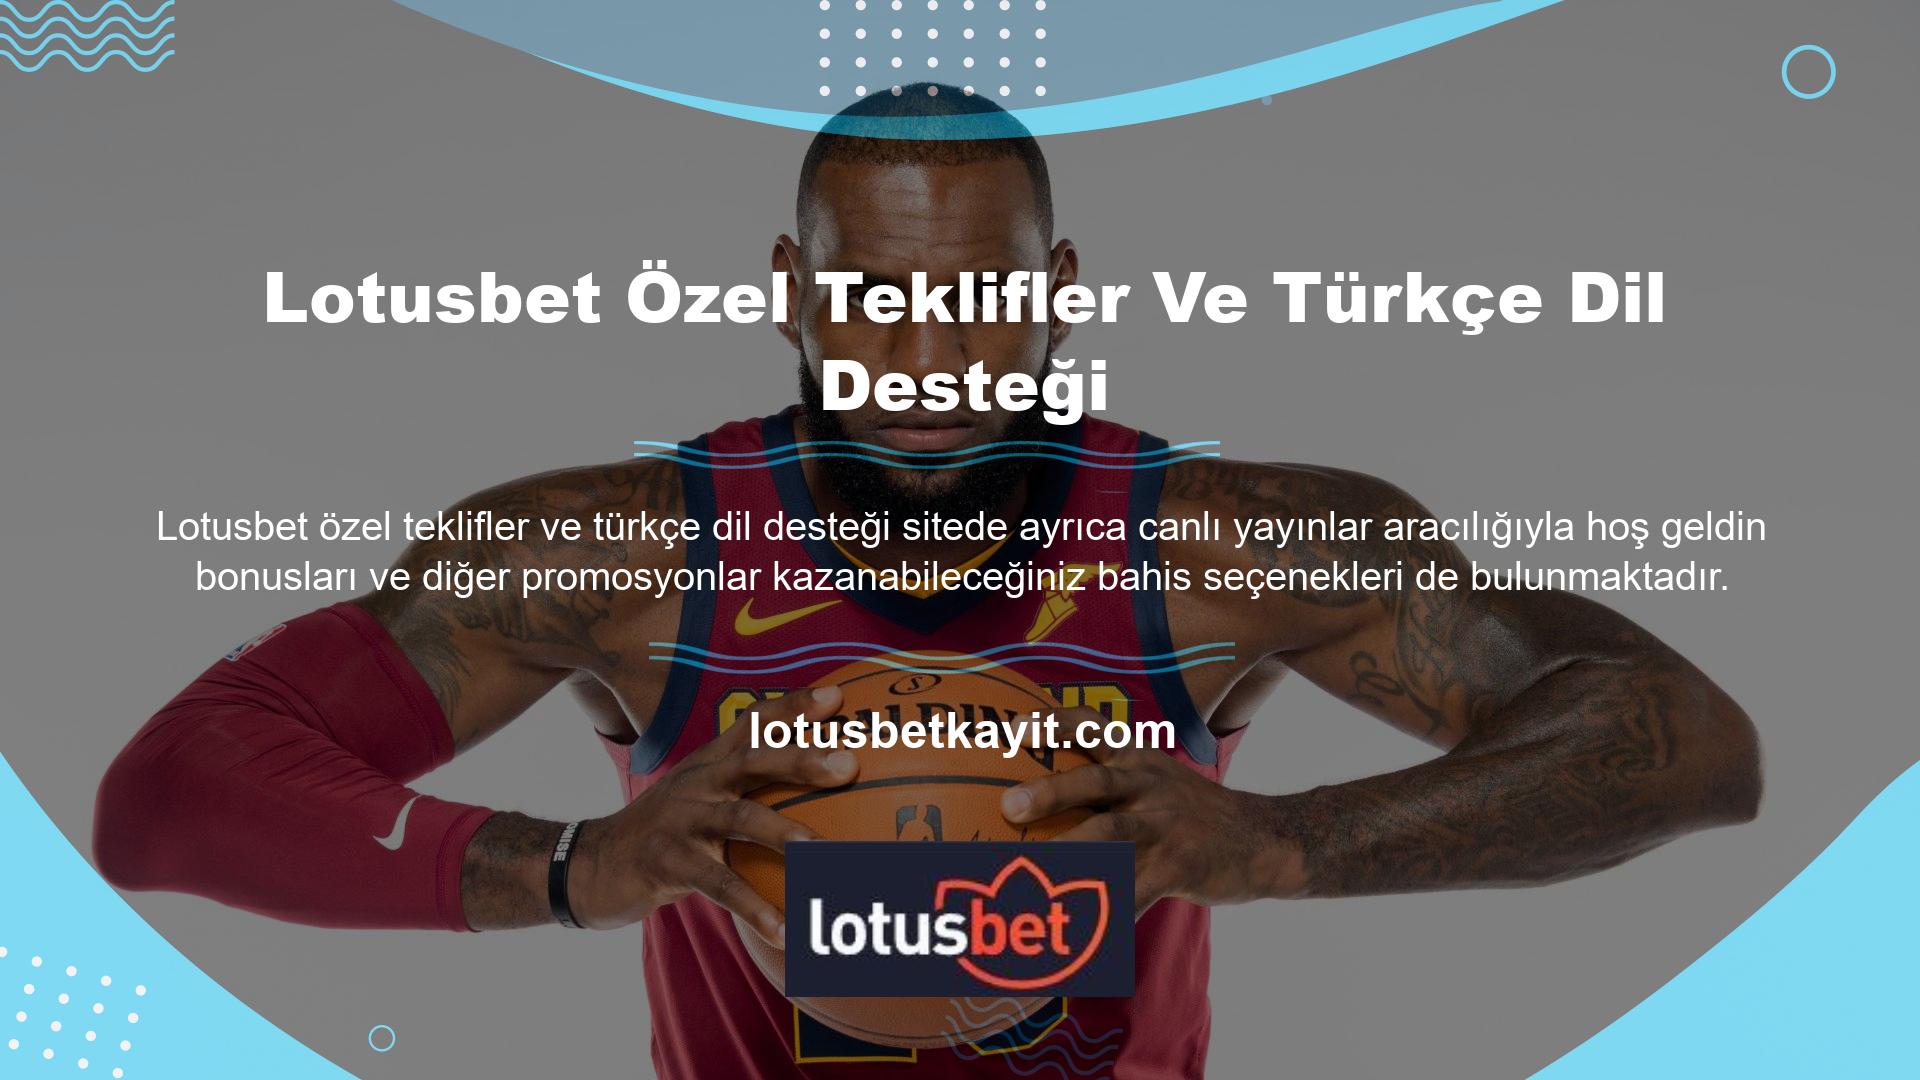 Lotusbet ayrıca Türkçe dil desteği sağlamakta ve casino sitesinin iletişim bilgileri, kullanıcı bilgileri ve kullanım koşullarına dayalı yayınlar üretmektedir